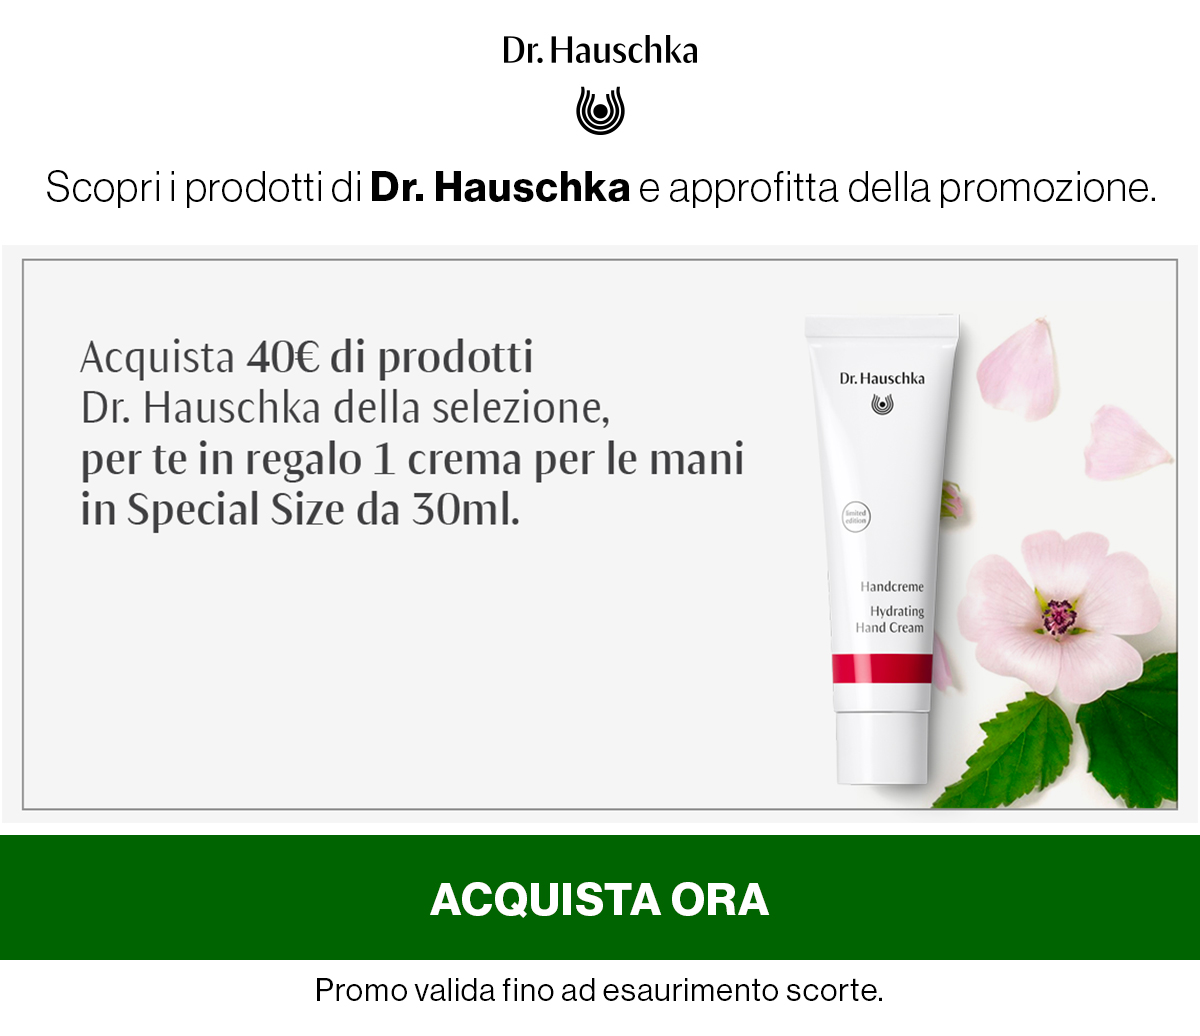 Acquista 40e di prodotti Dr, Hauschka per te in regalo 1 crema per le mani in Special Size da 30ml